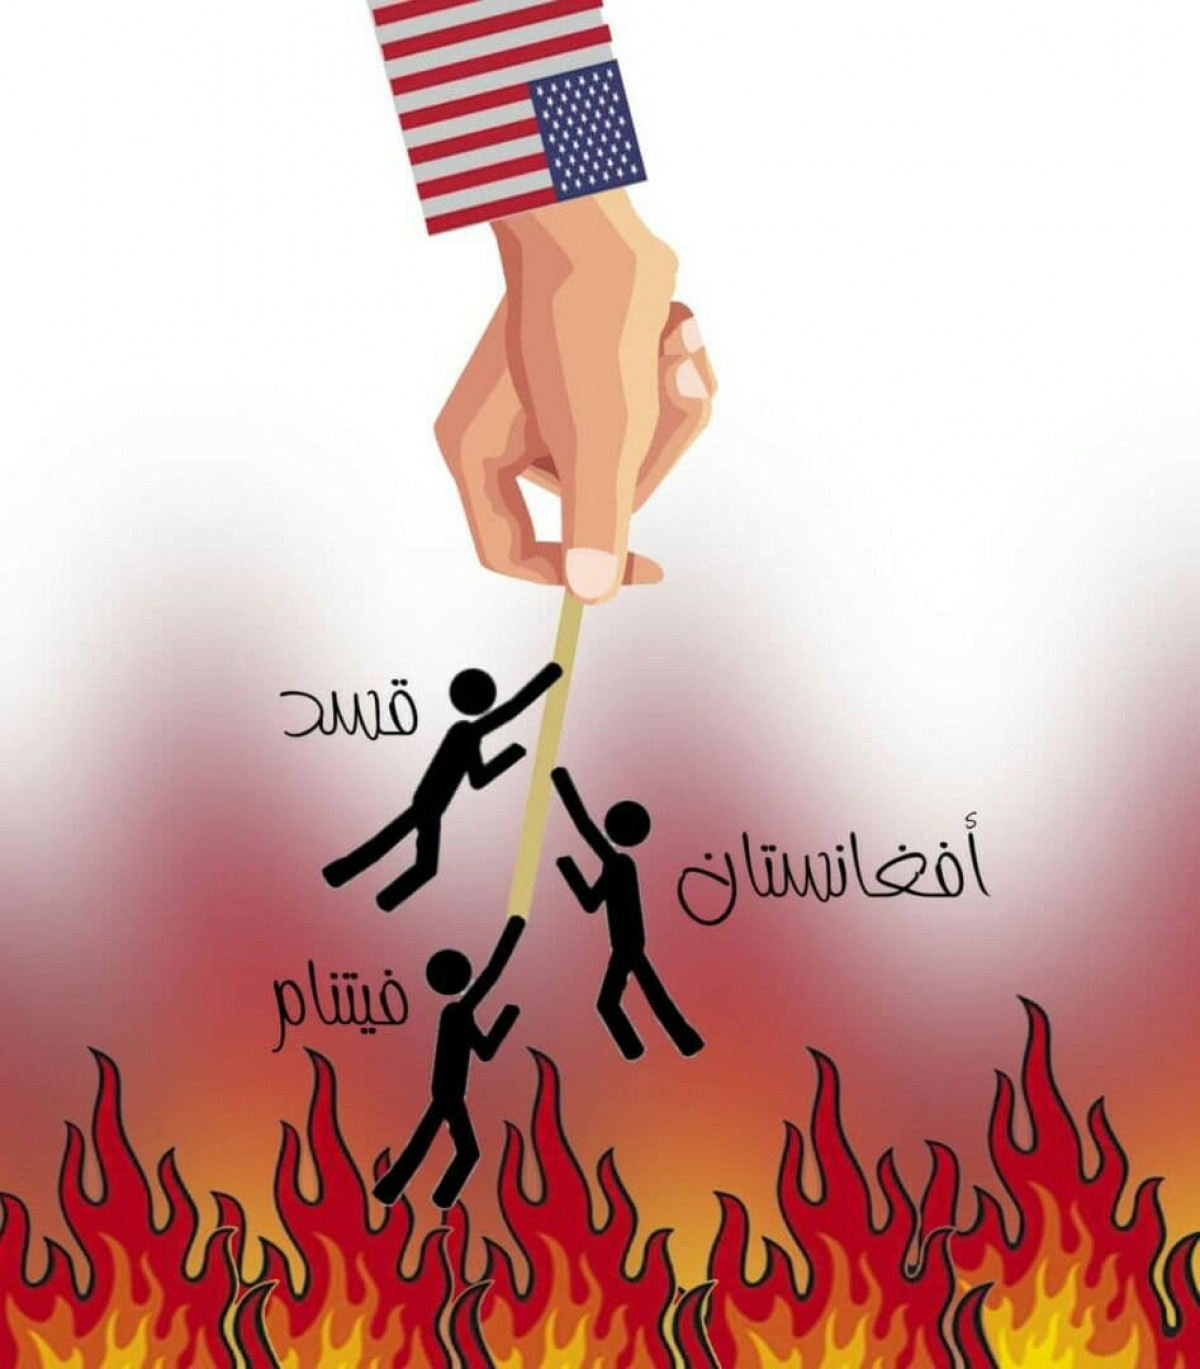 كاريكاتير / الولايات المتحدة وسياسة التخلي عن الحلفاء